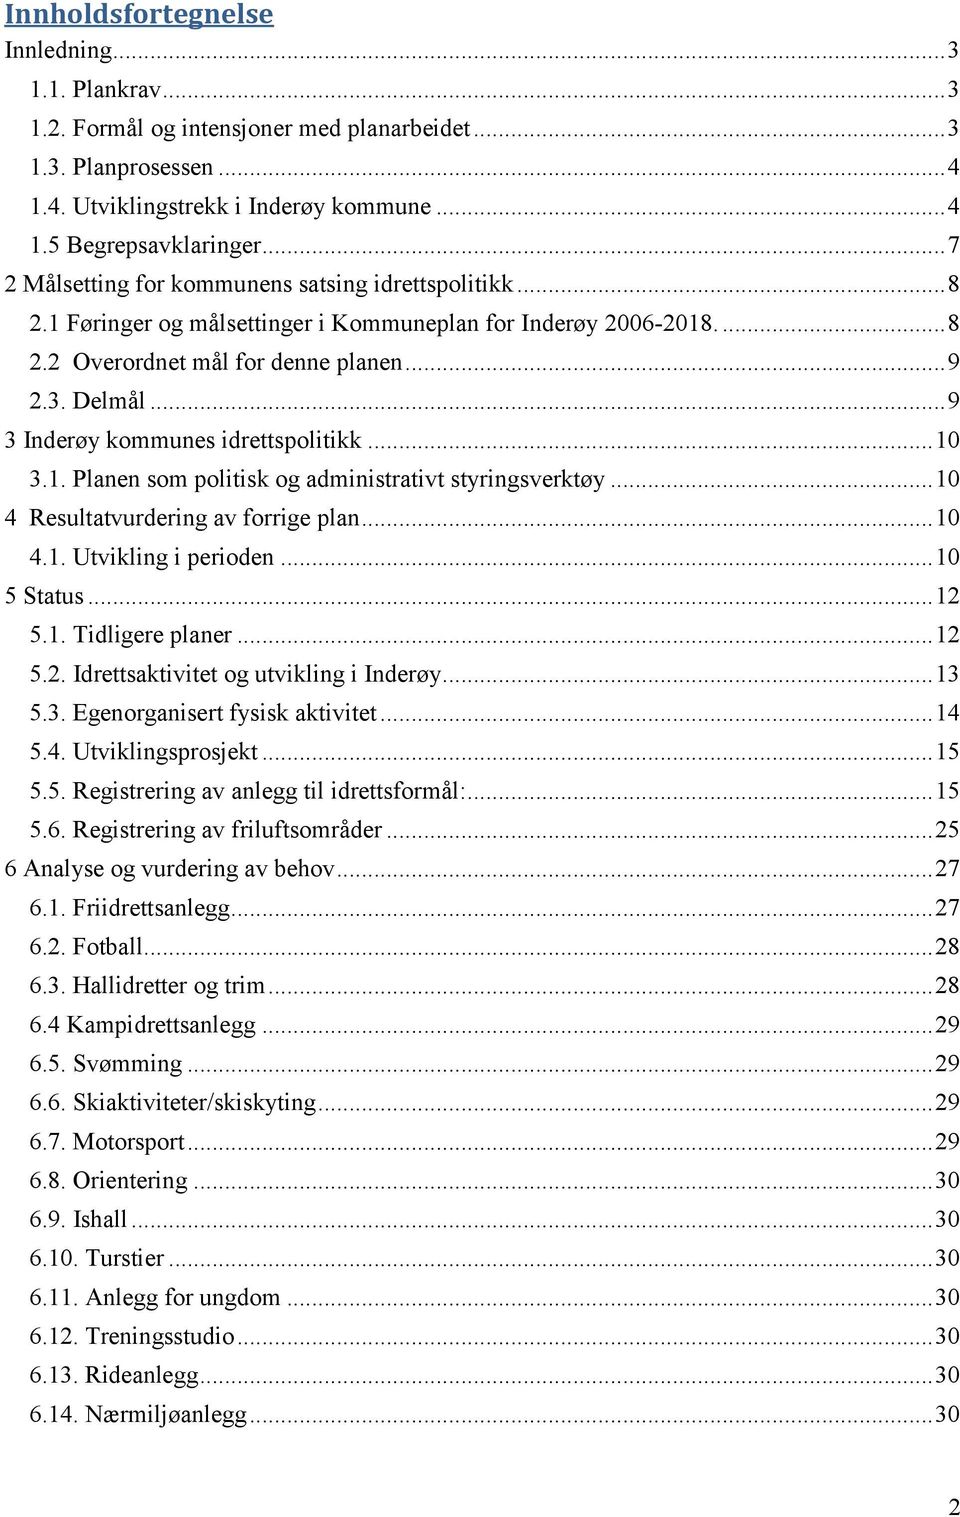 .. 9 3 Inderøy kommunes idrettspolitikk... 10 3.1. Planen som politisk og administrativt styringsverktøy... 10 4 Resultatvurdering av forrige plan... 10 4.1. Utvikling i perioden... 10 5 Status... 12 5.